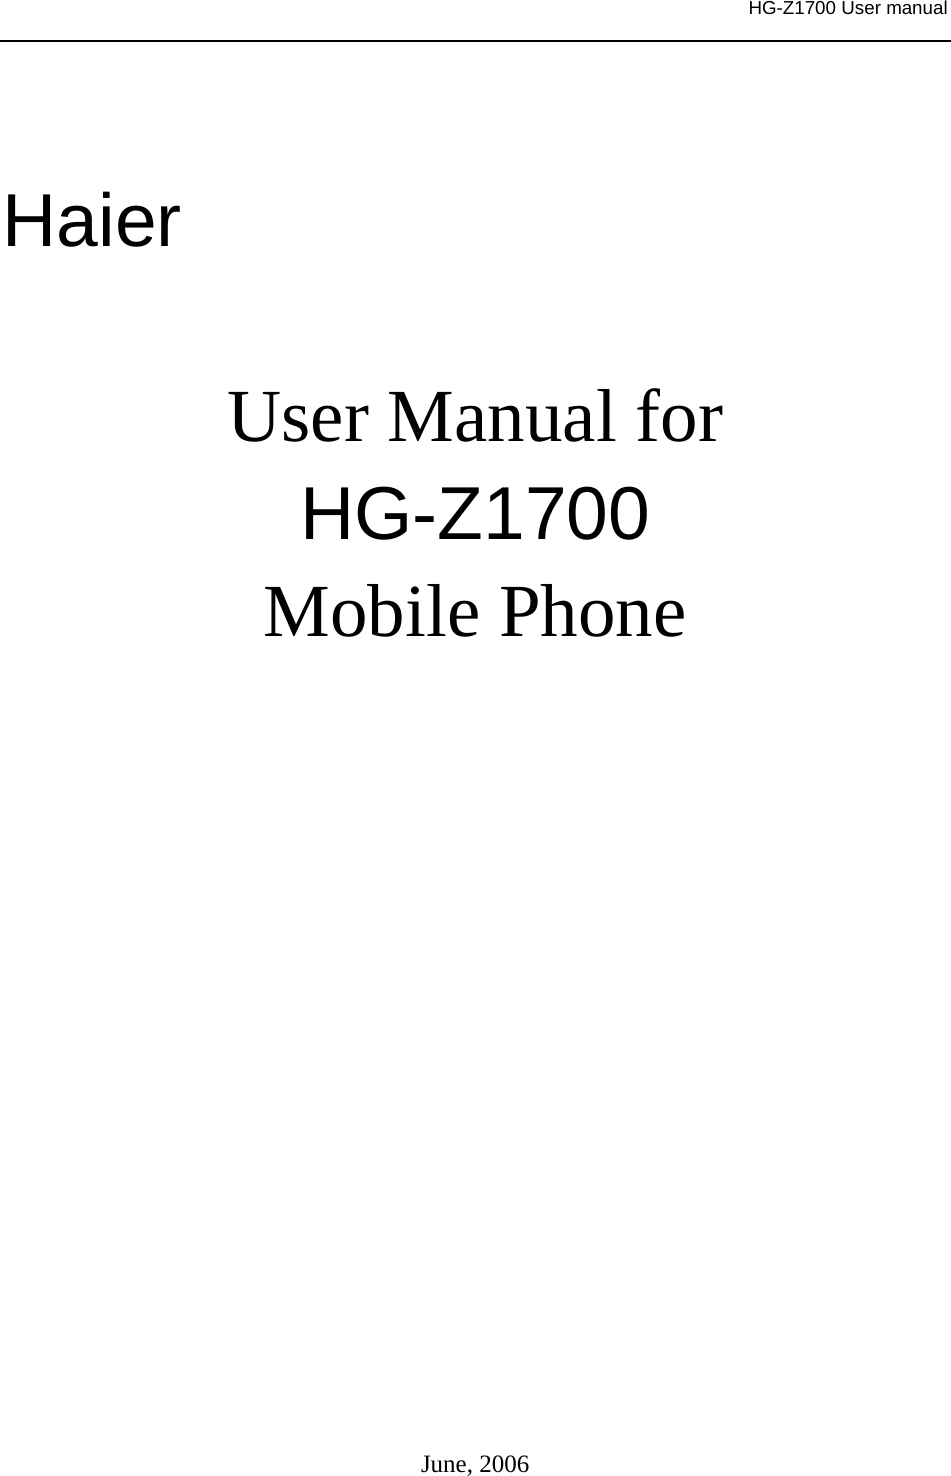     HG-Z1700 User manual     Haier  User Manual for HG-Z1700 Mobile Phone               June, 2006 